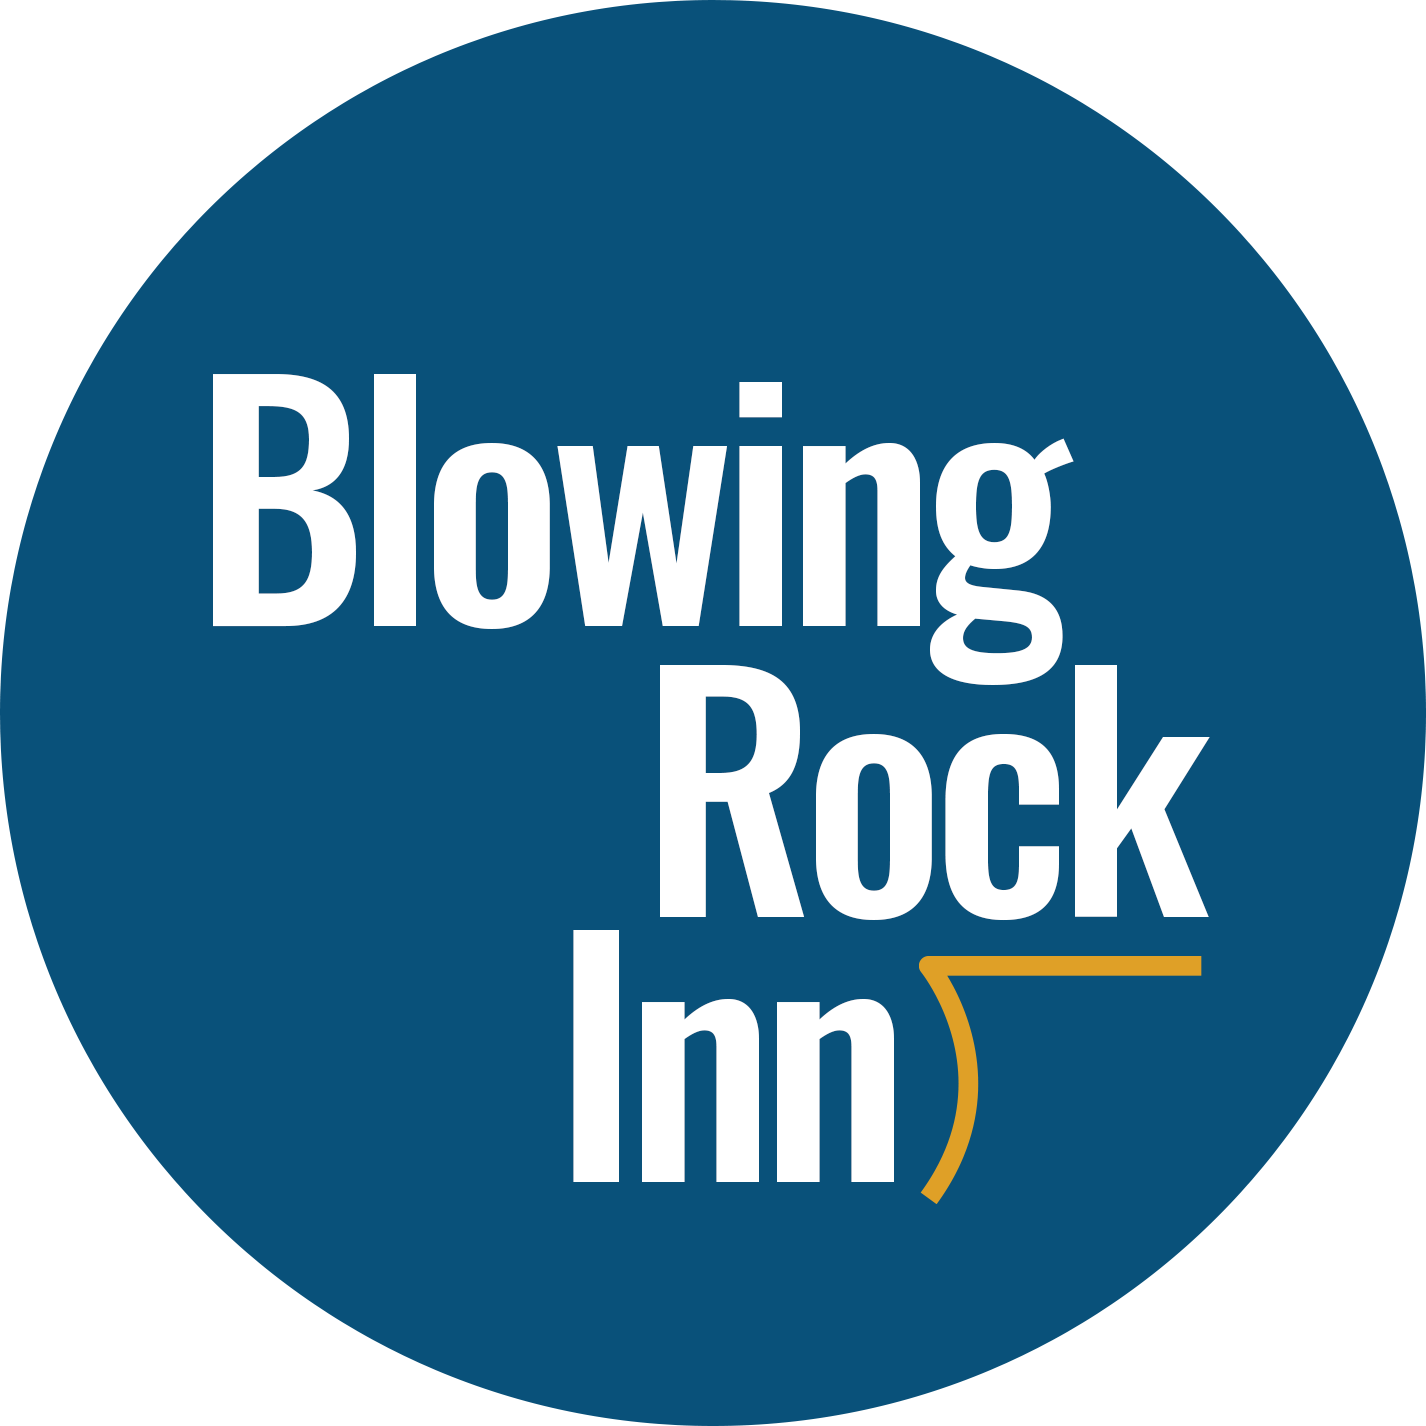 Blowing Rock Inn